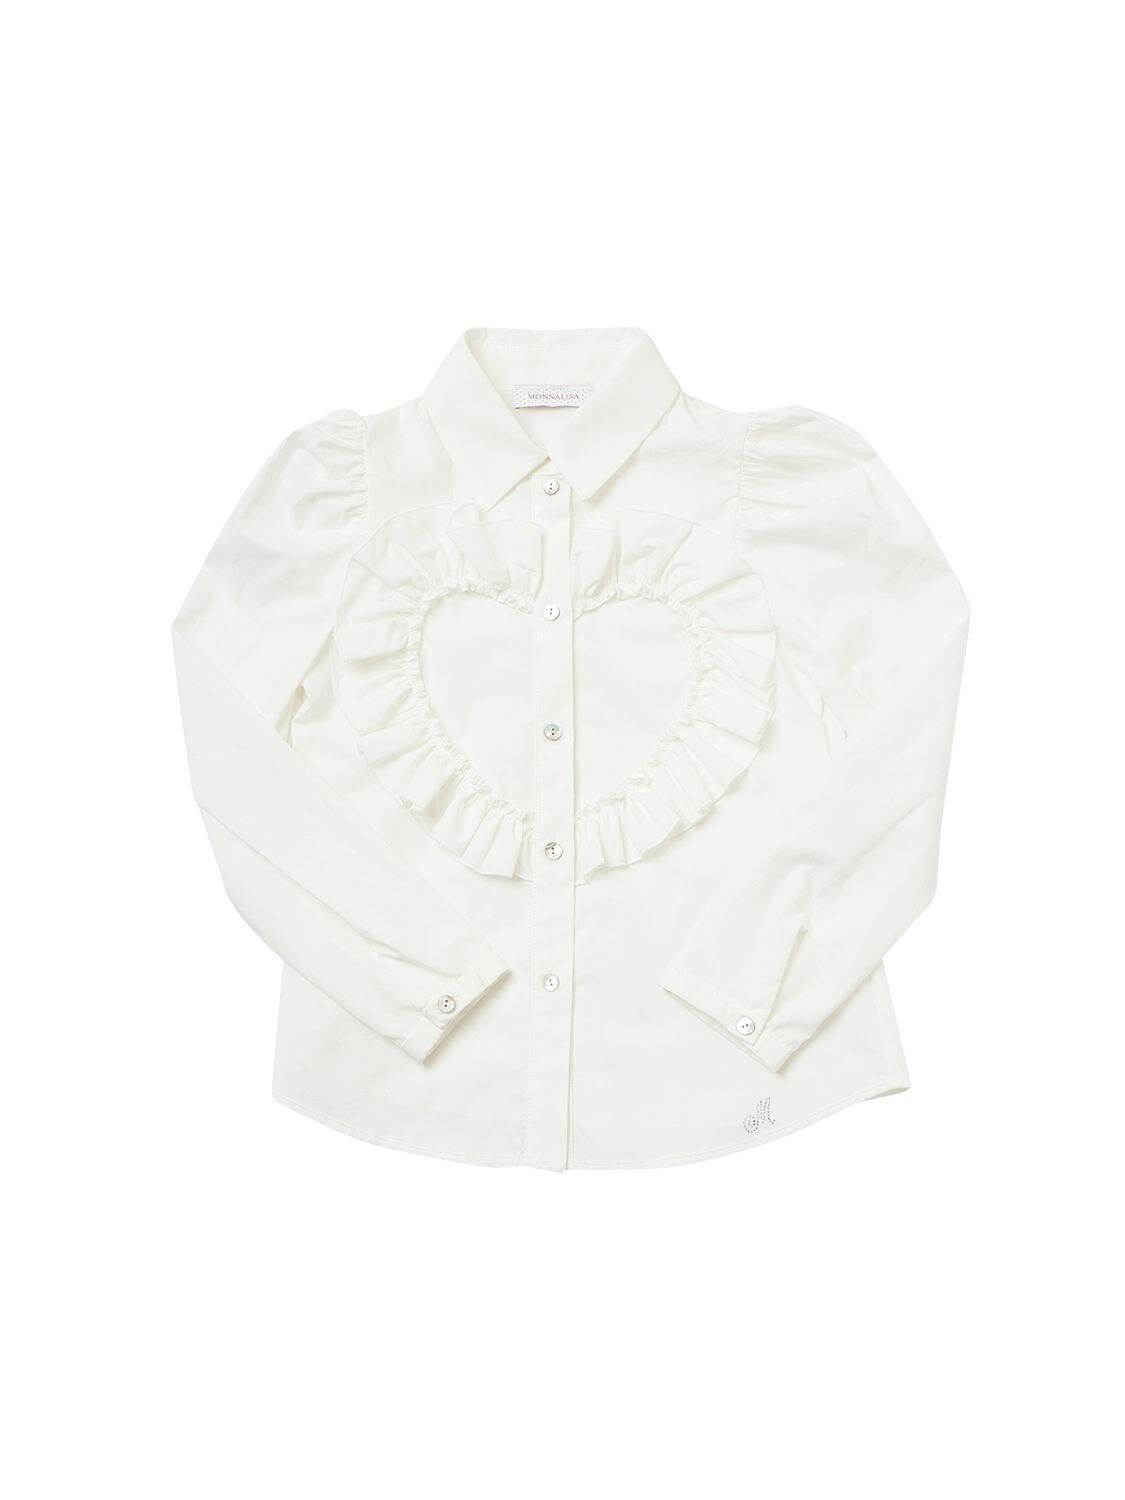 Monnalisa Kids' Cotton Poplin Shirt W/ Heart In Weiss